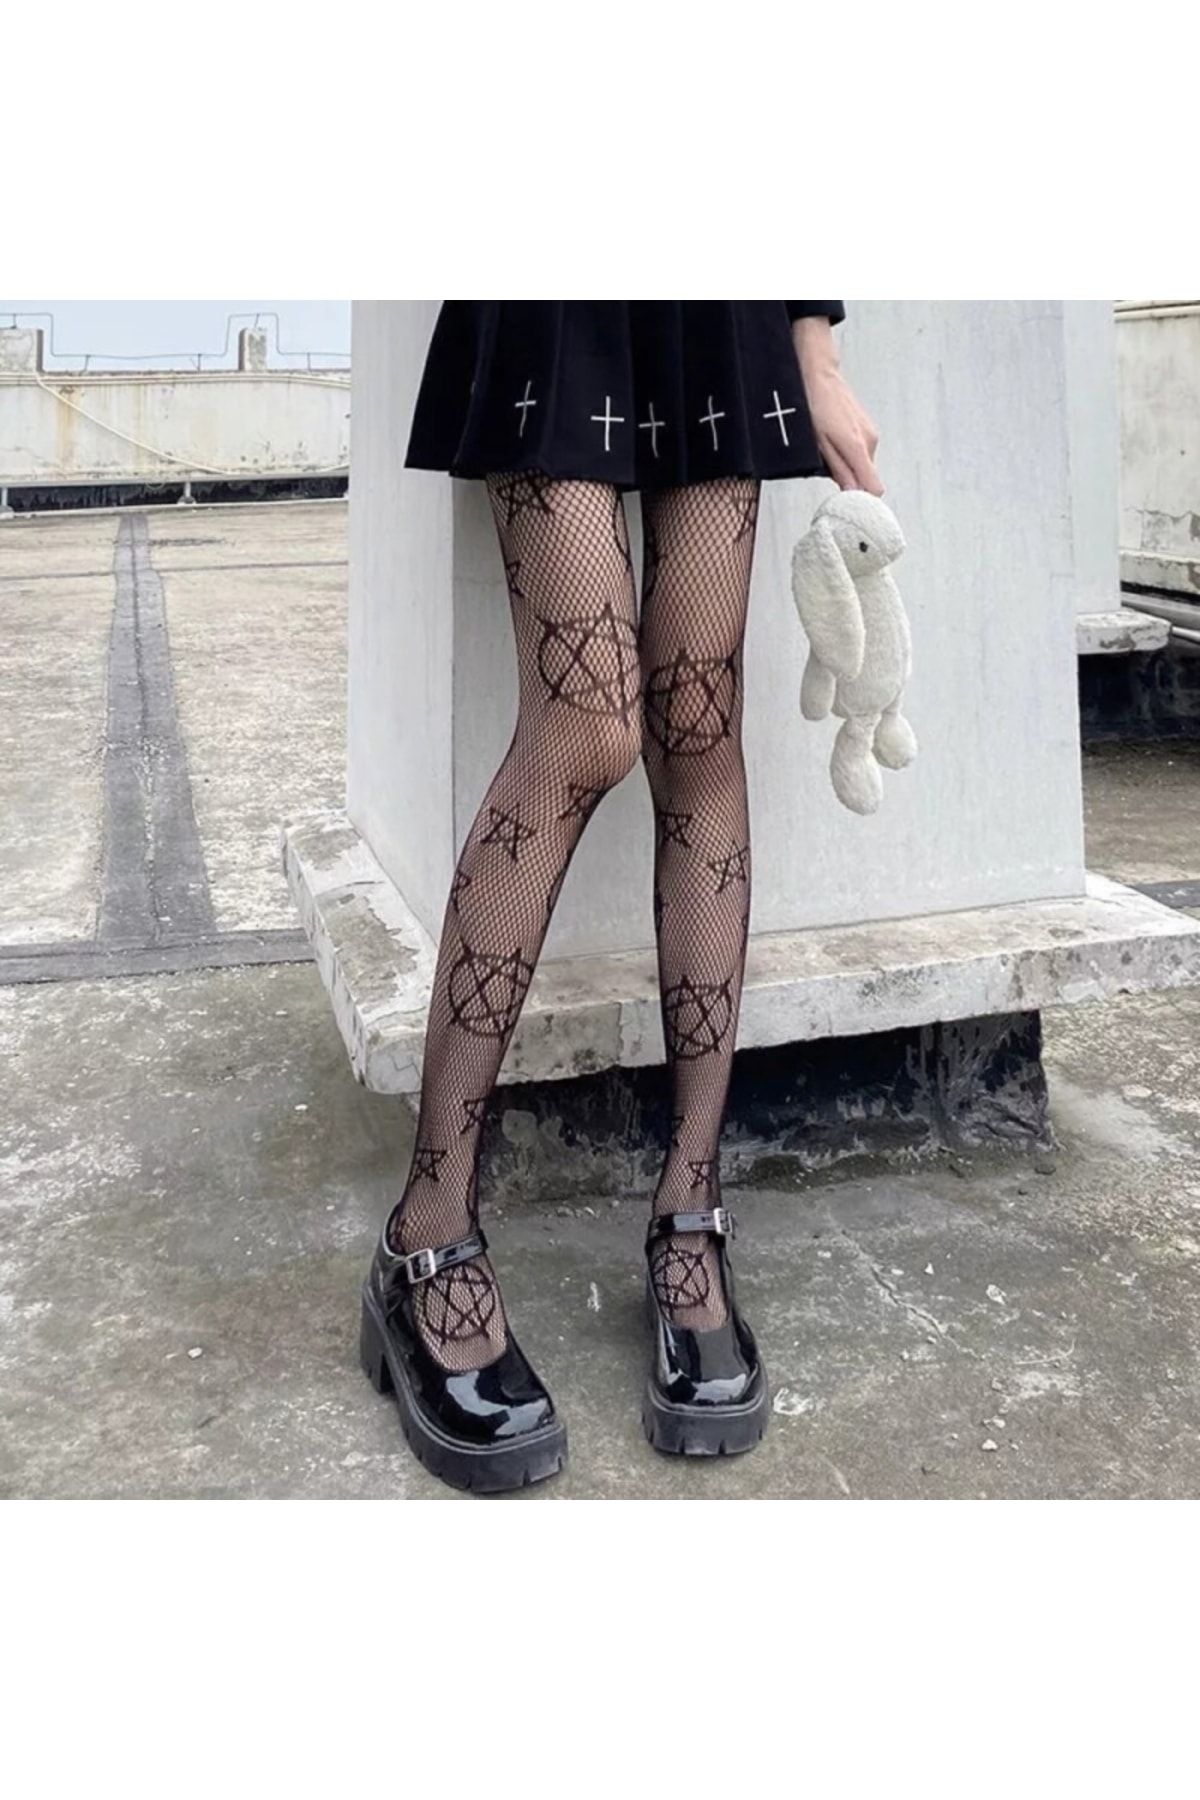 VEGAROKS Punk Gothic Pentagram Desenli Ithal Külotlu Çorap